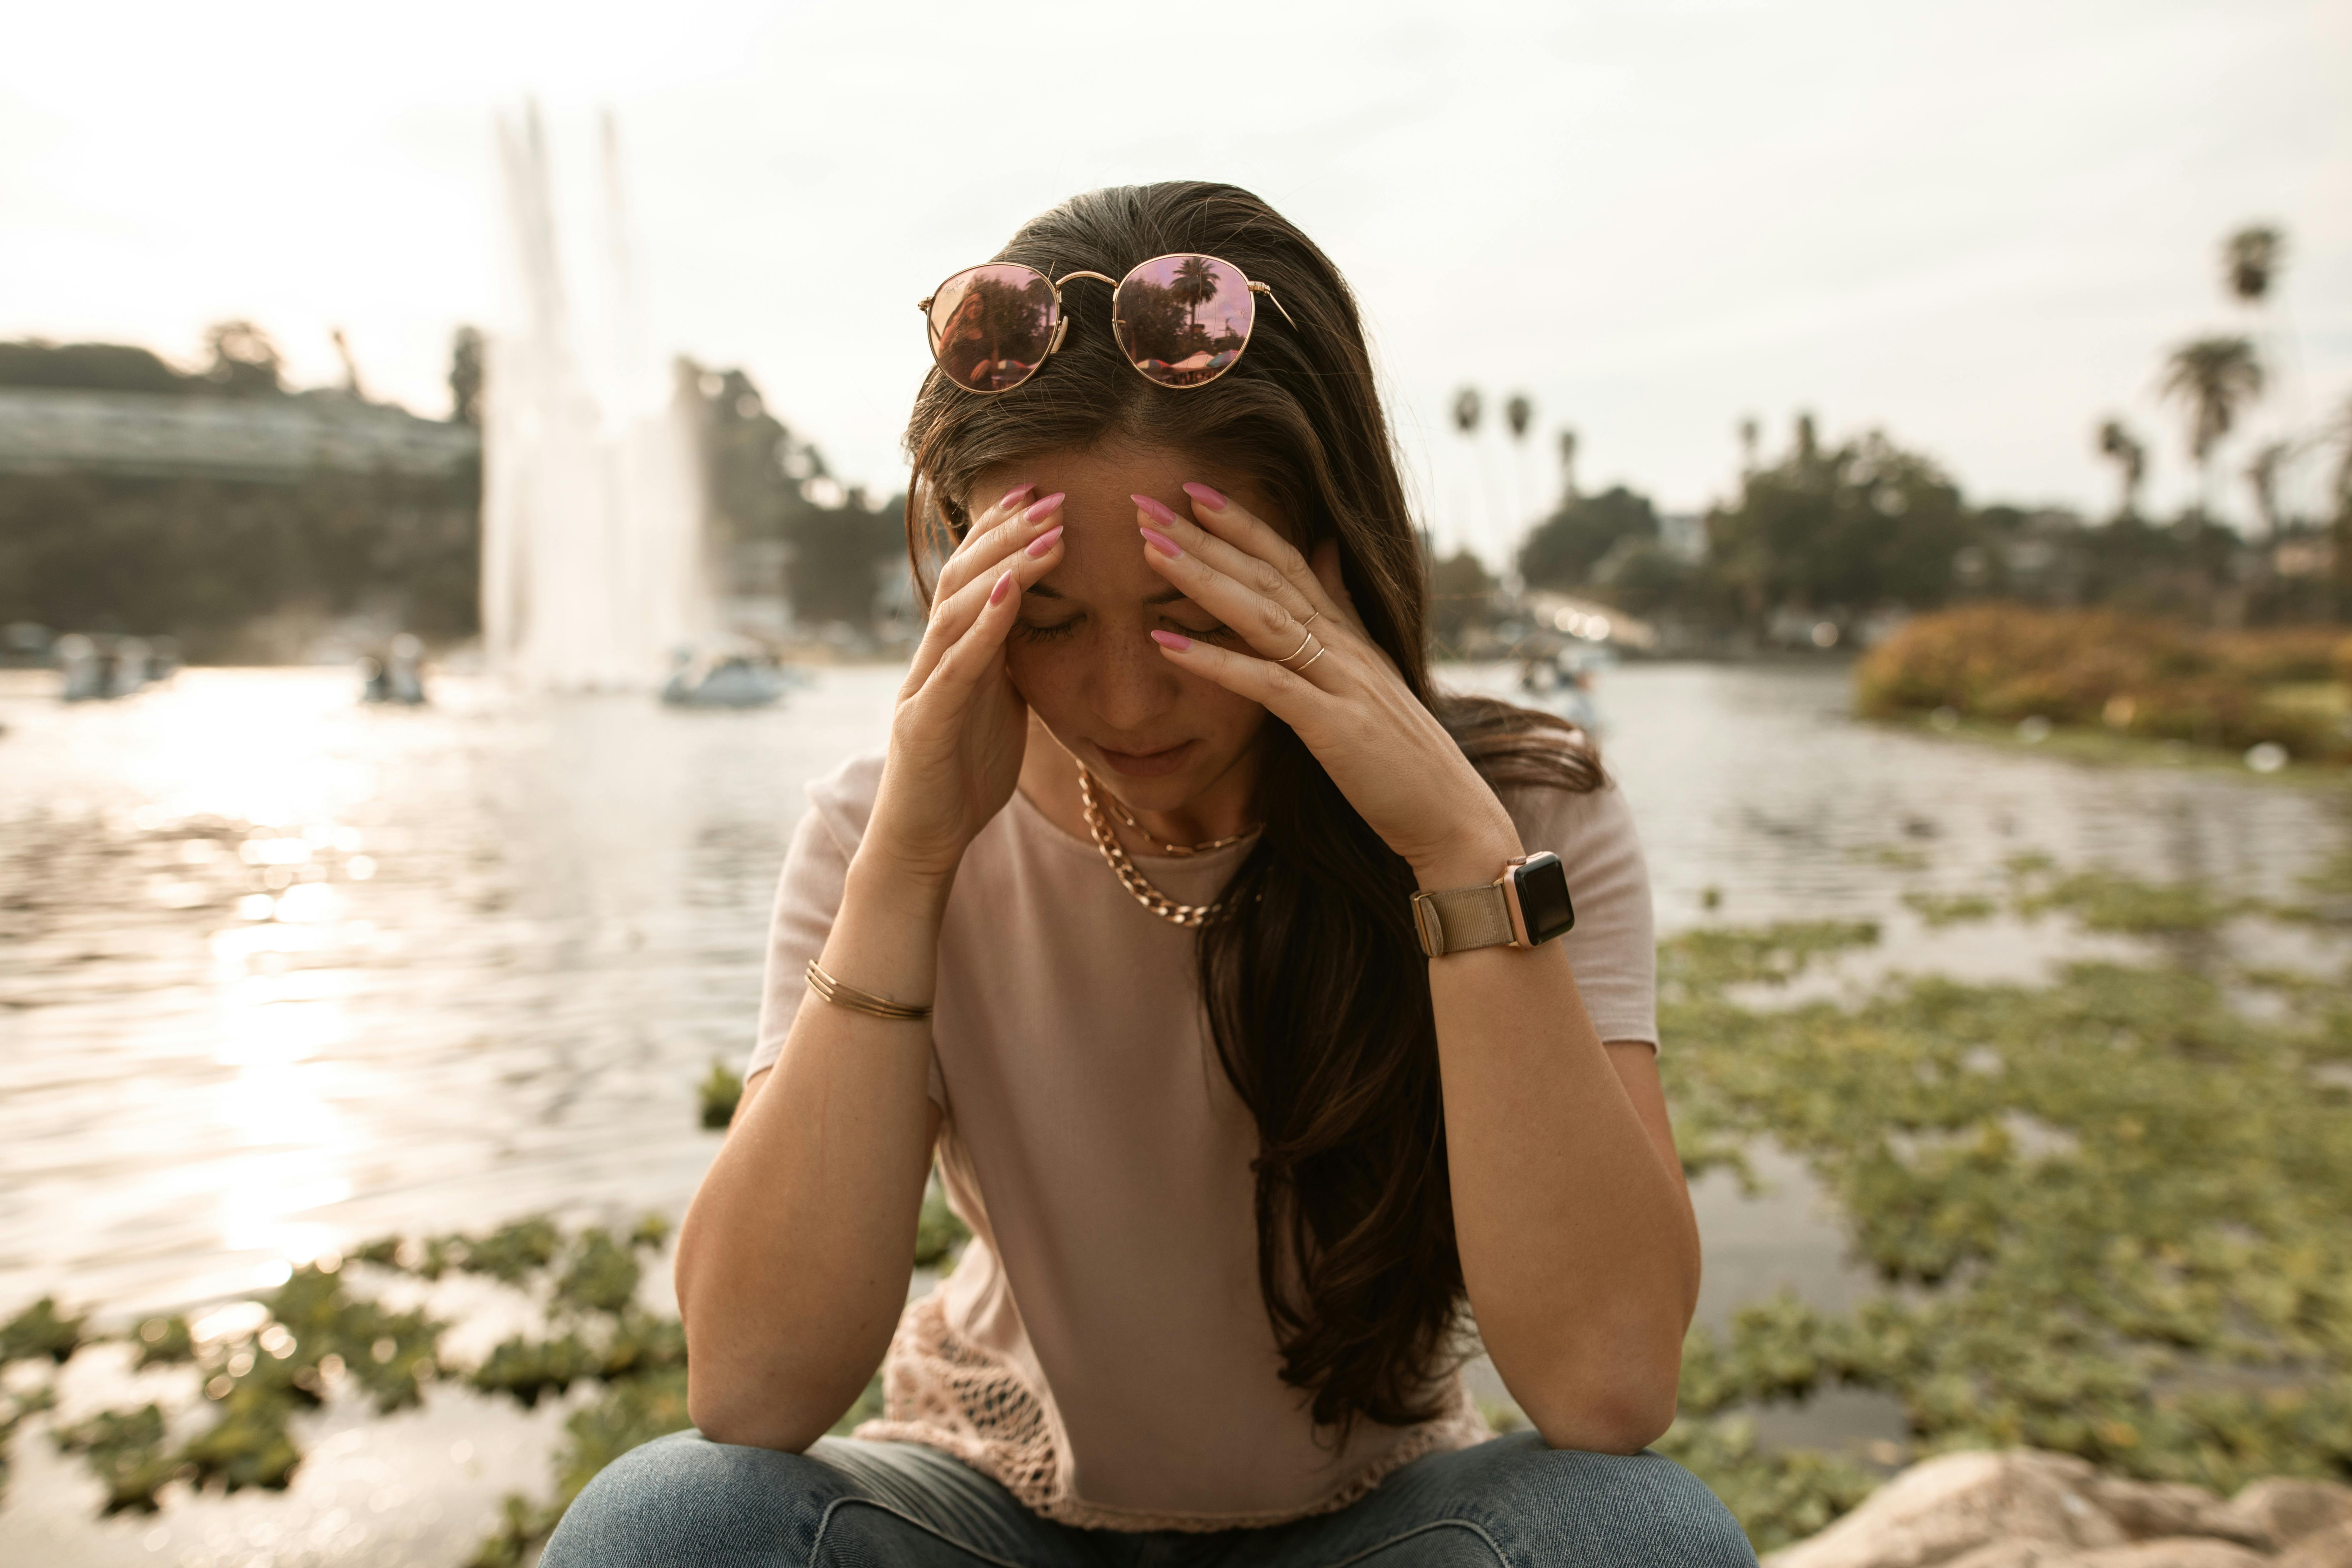 Una mujer angustiada sentada a la orilla de un lago y tocándose la cara con desesperación | Fuente: Pexels